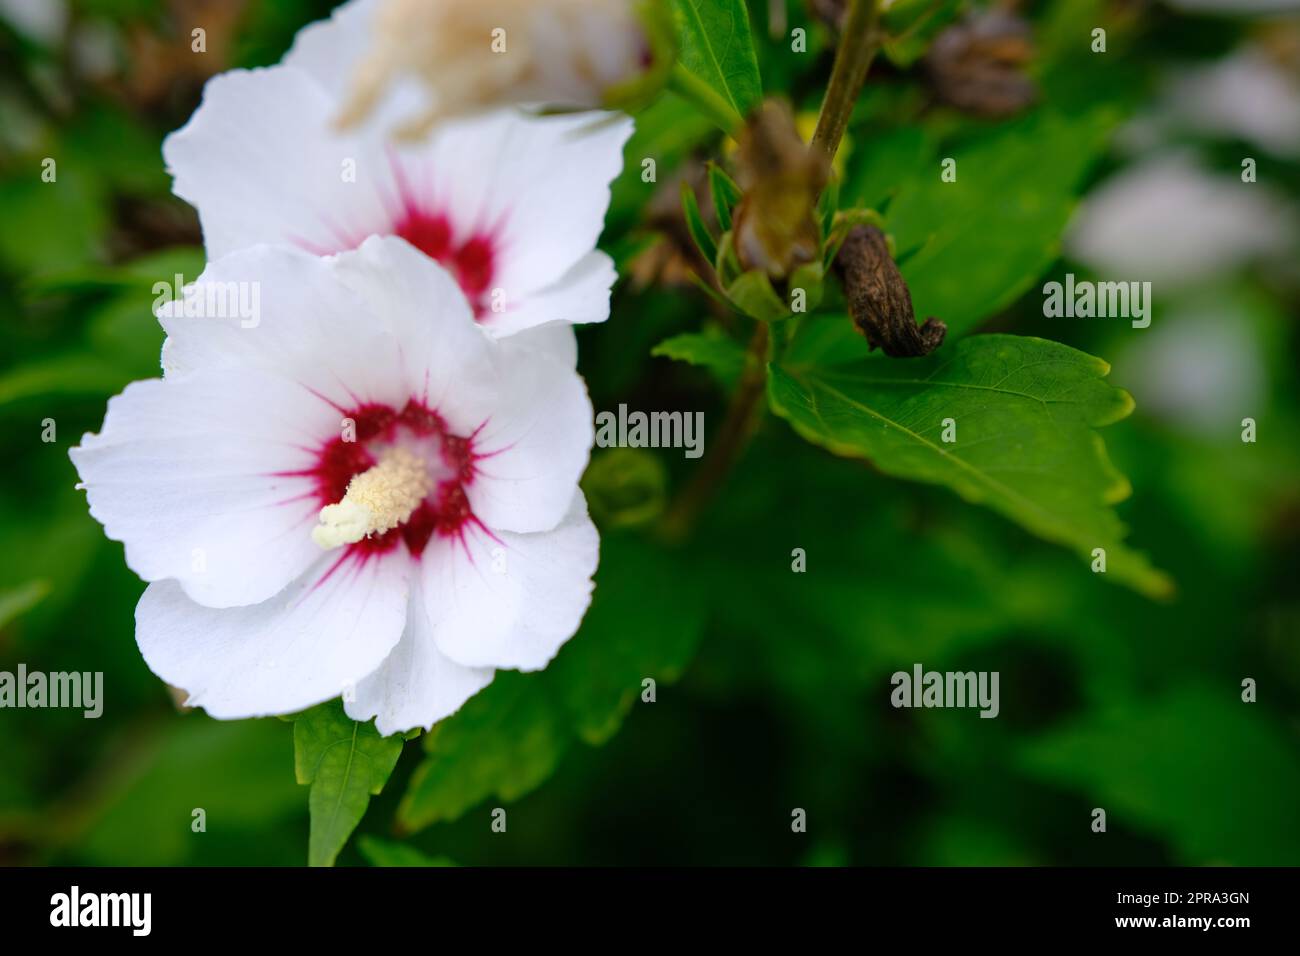 fiore di ibisco bianco che fiorisce nel giardino, primo piano di petali e pollini, sfondo per la fotografia naturalistica Foto Stock